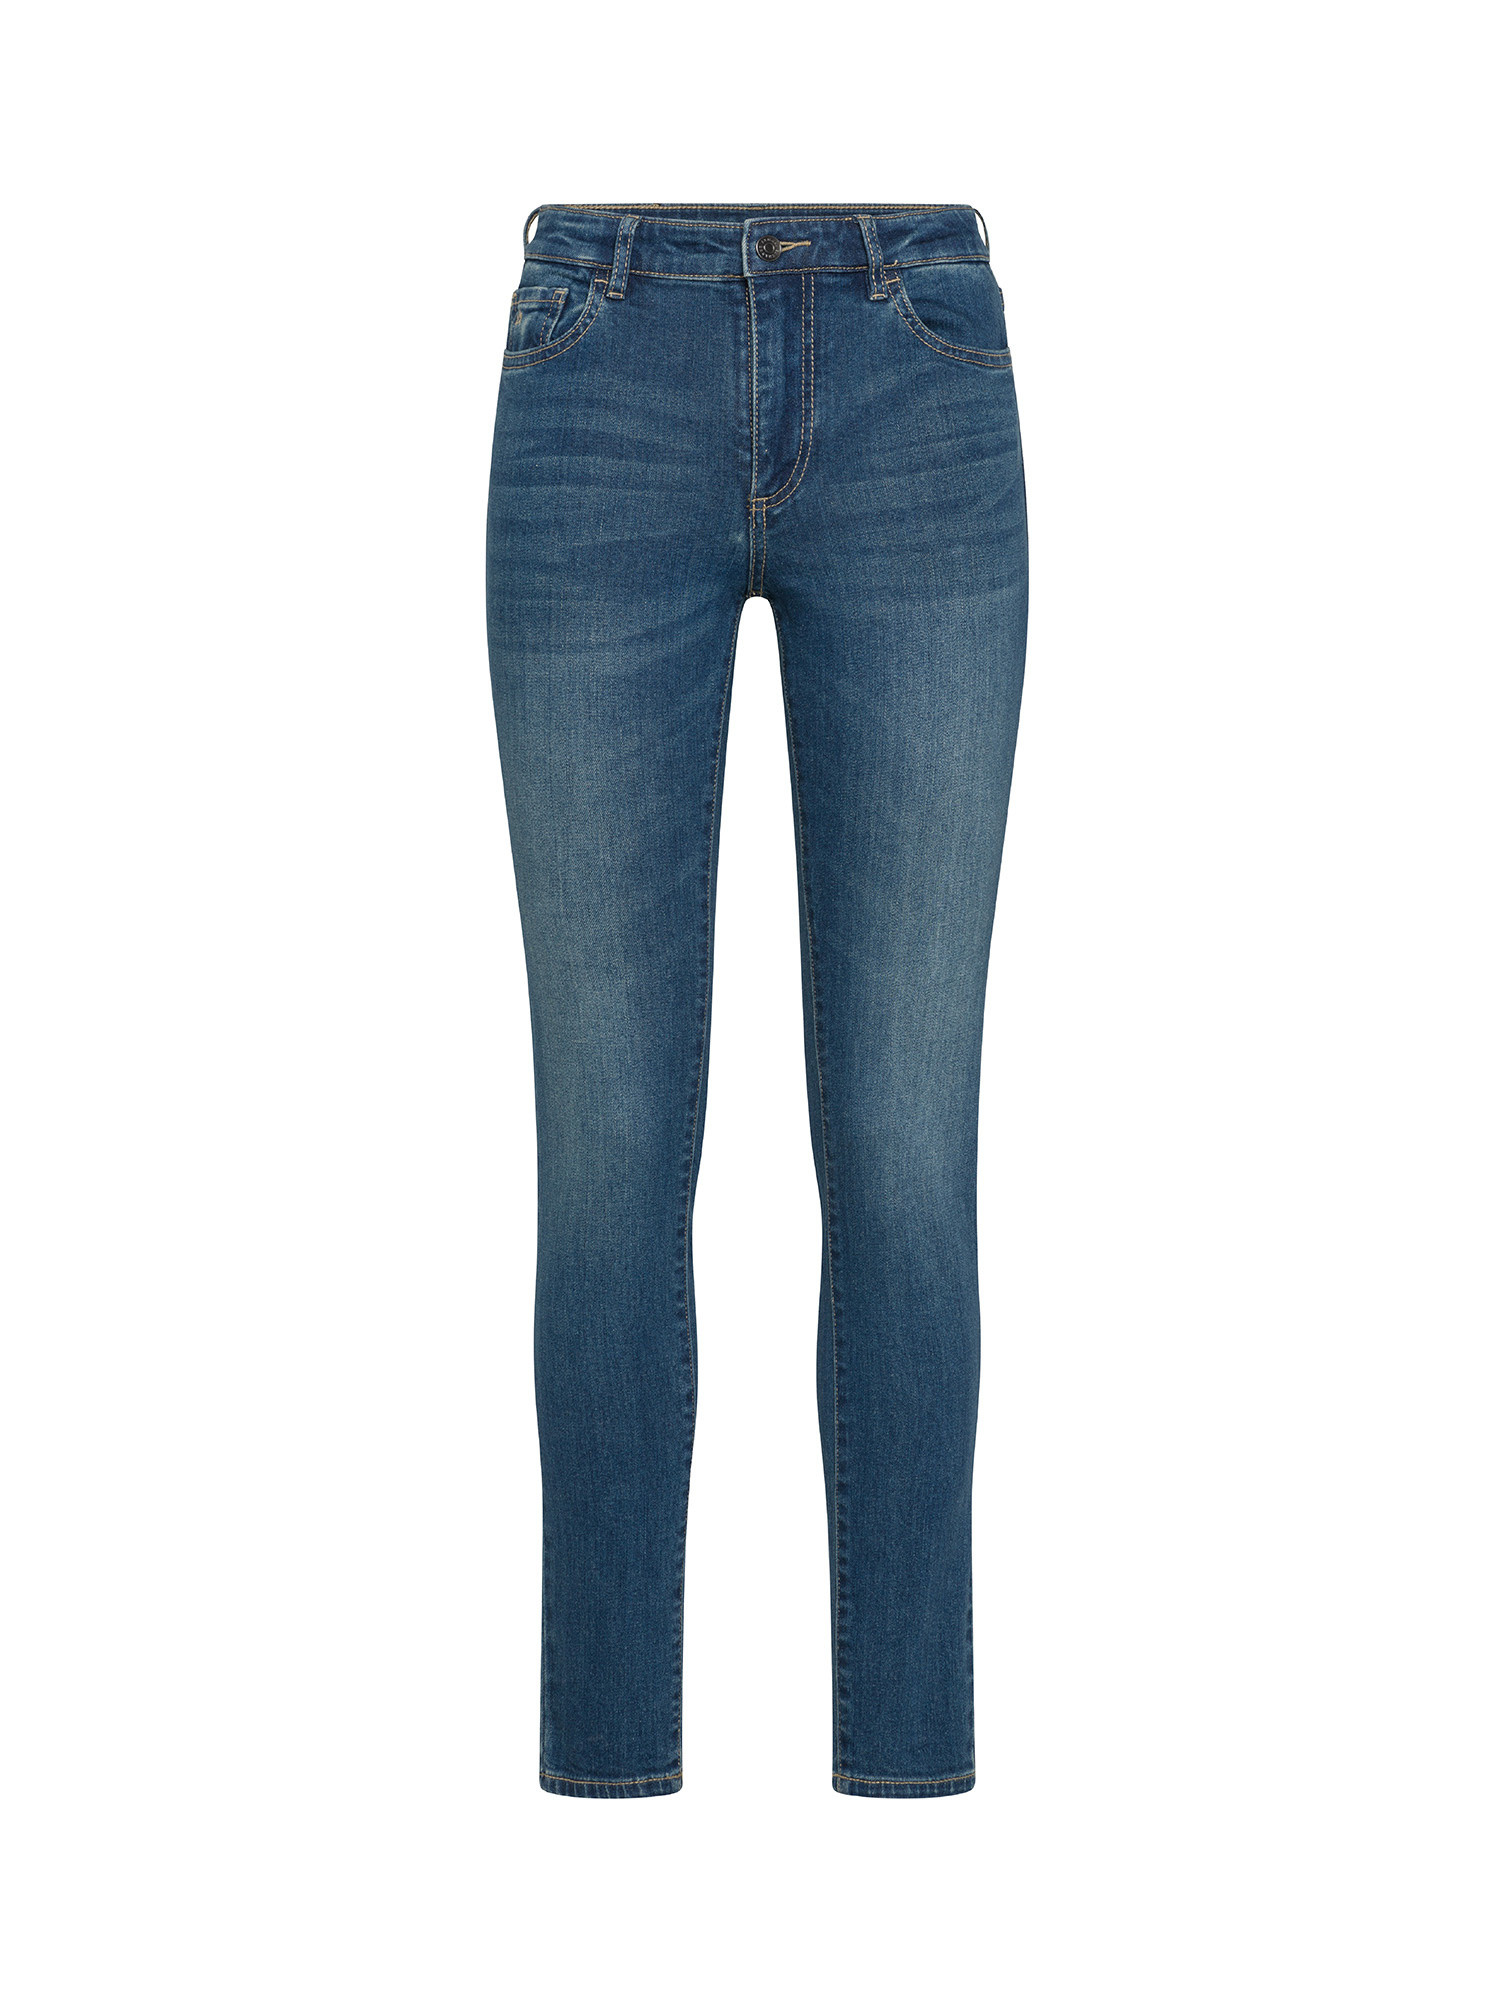 Armani Exchange - Jeans super skinny, Denim, large image number 0